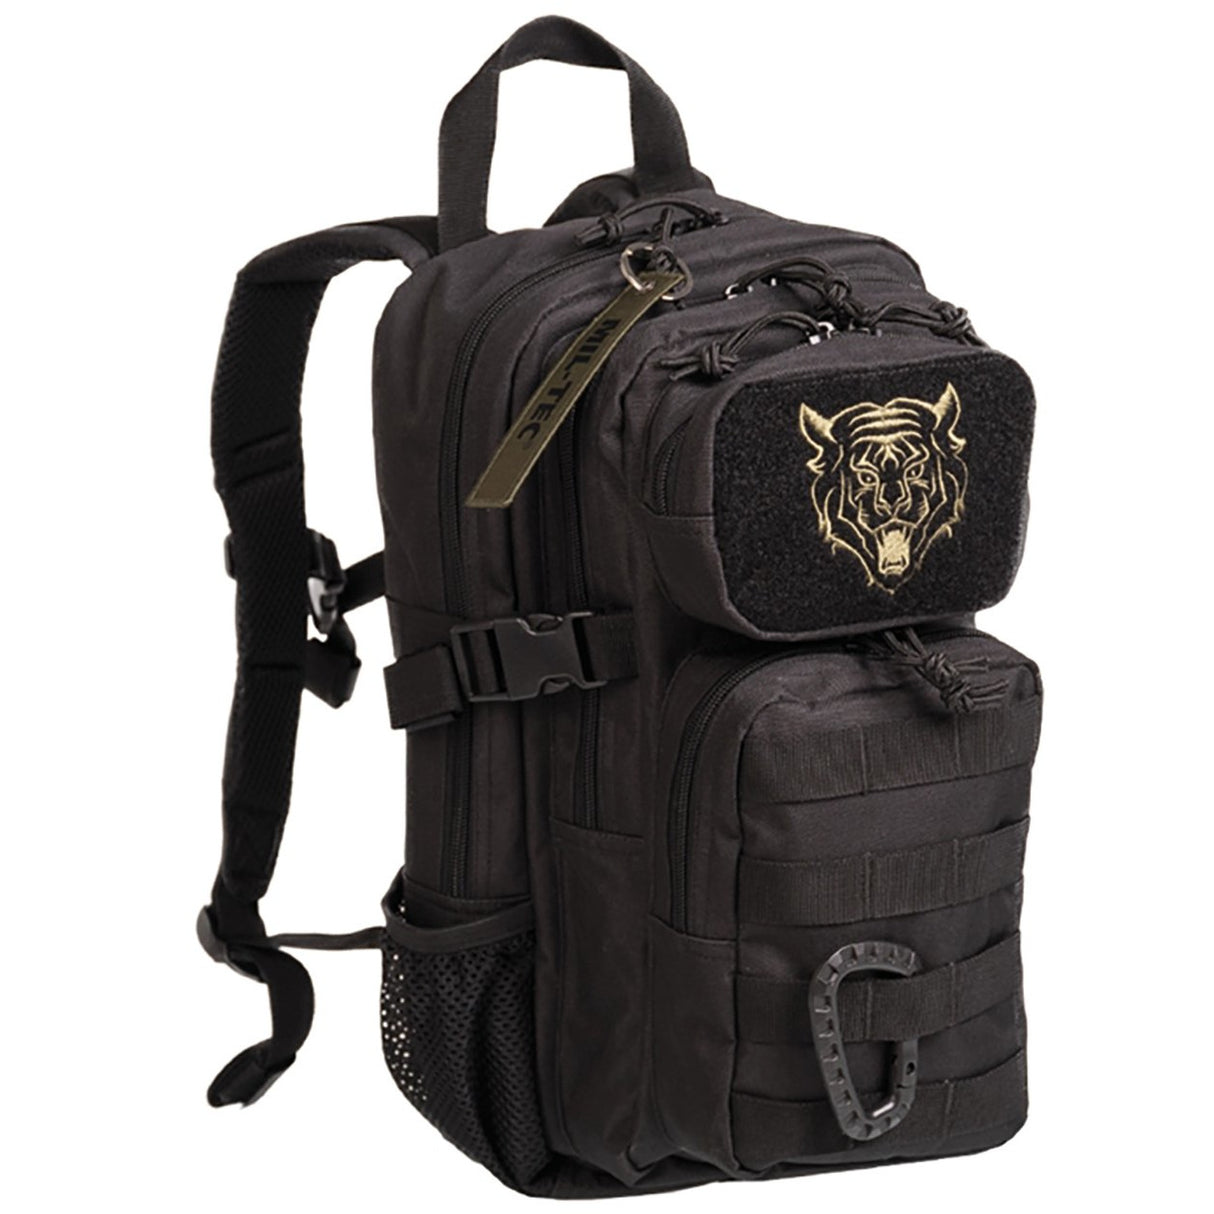 US Assault Pack Kids Backpack 14L Black | Olive